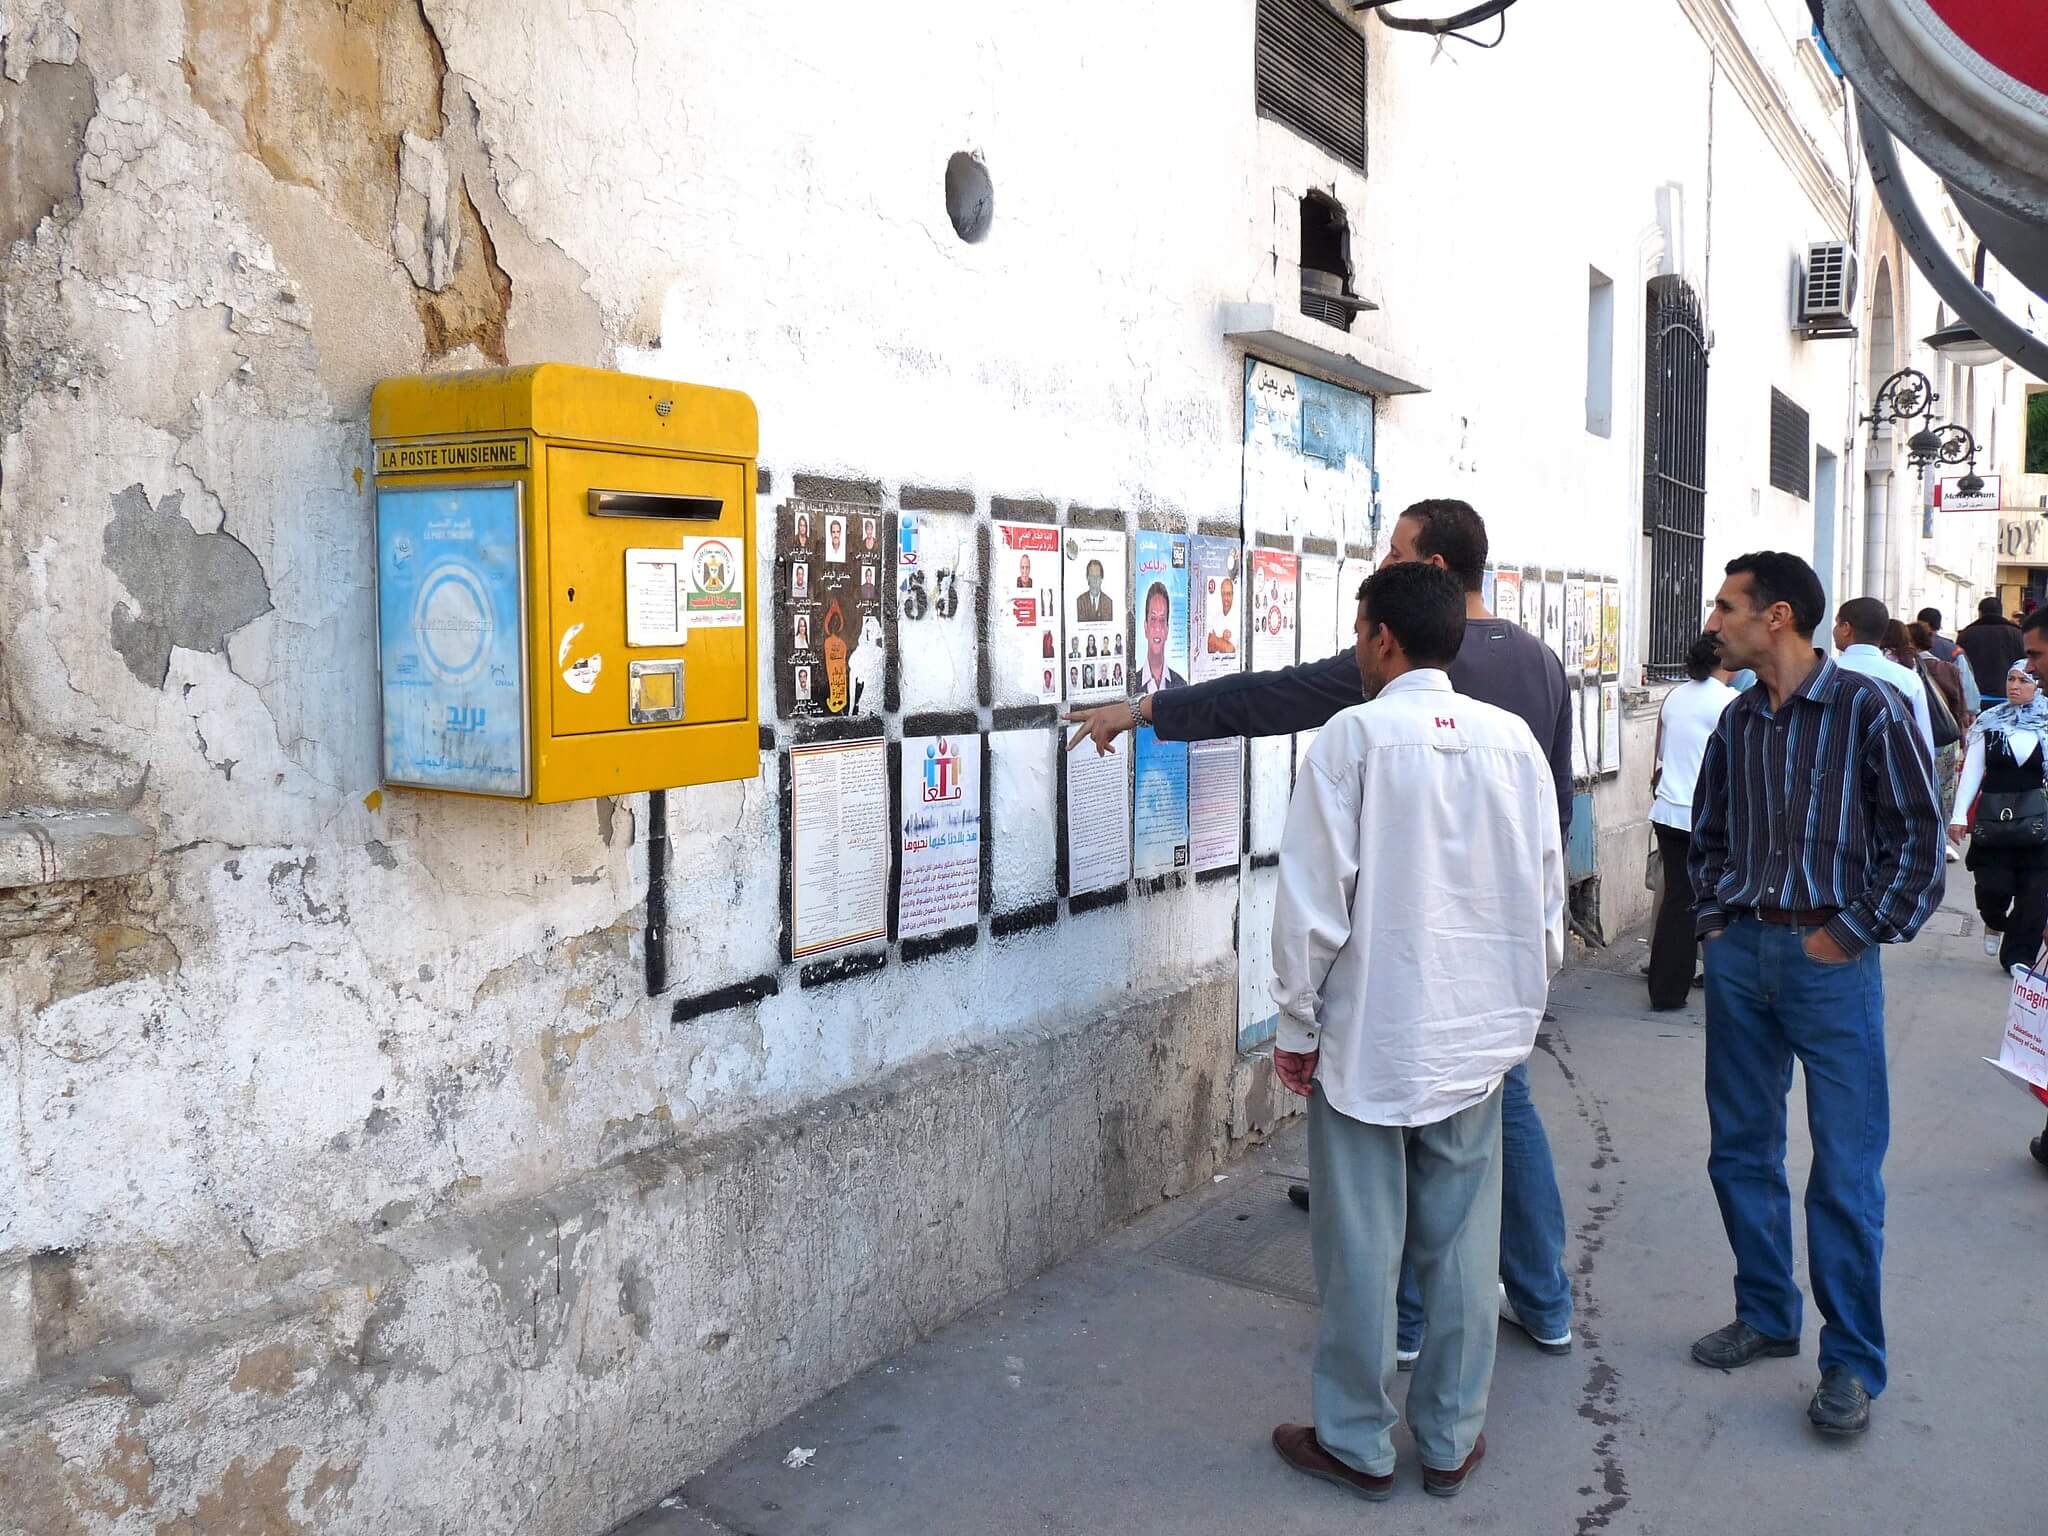 Aarts - Tunesië tijdens de verkiezingen in oktober 2011. Stefan de Vries - Flickr2